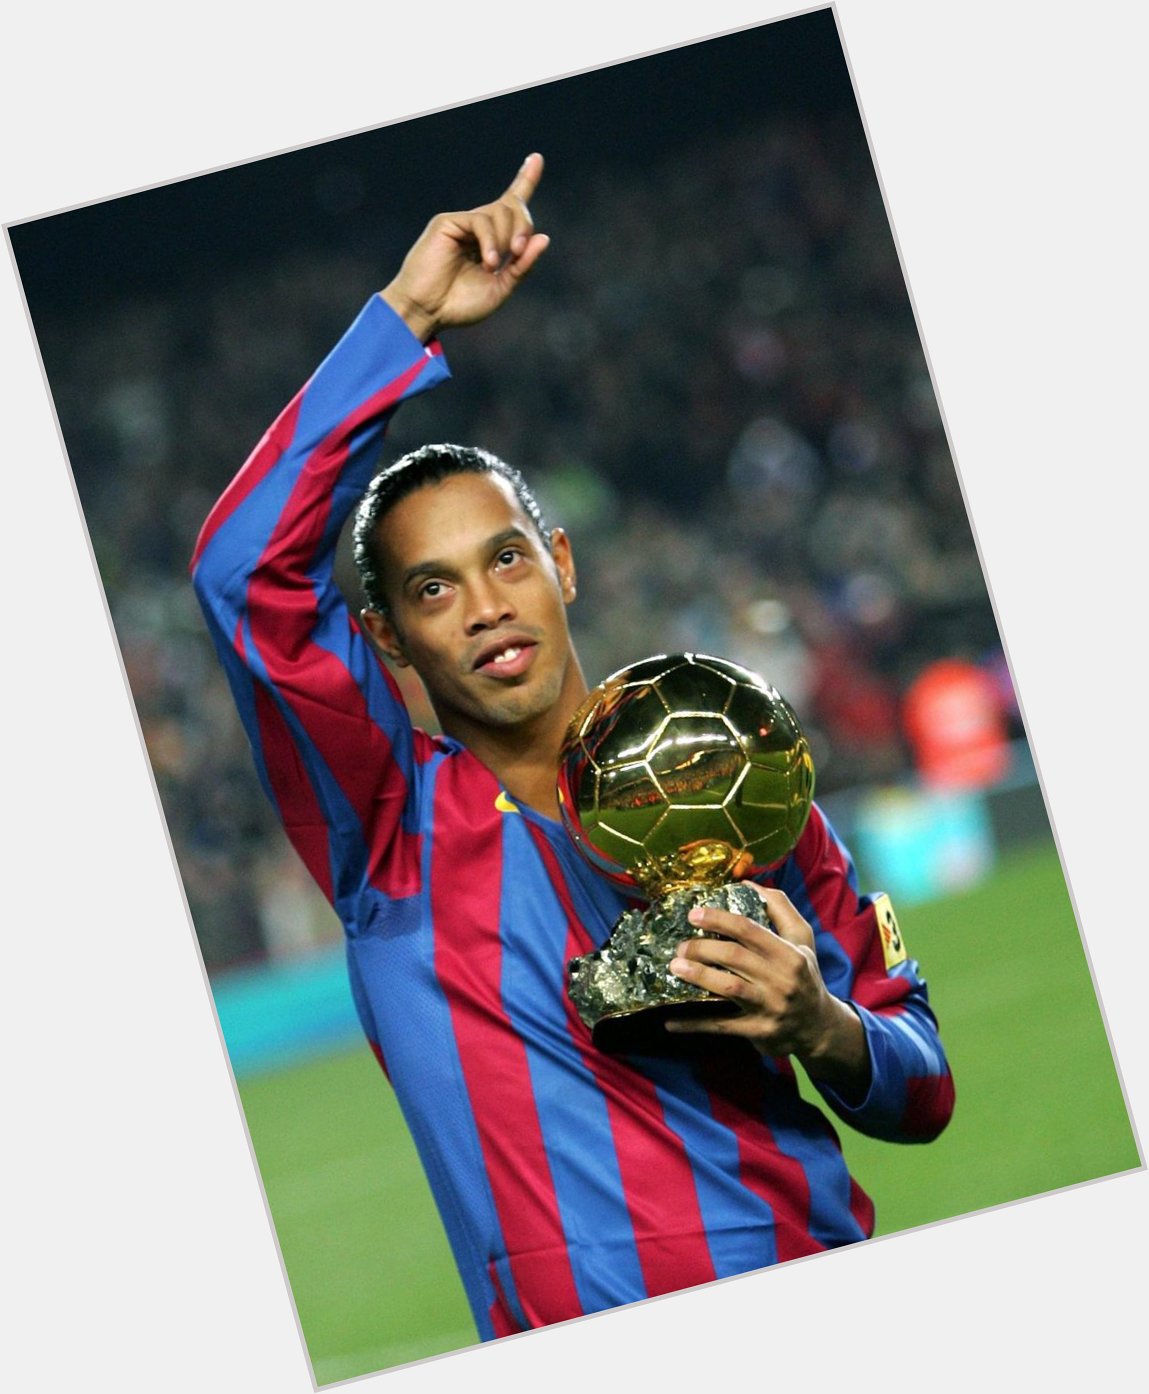   Wish 2006 winner Ronaldinho Gaúcho a happy birthday!       